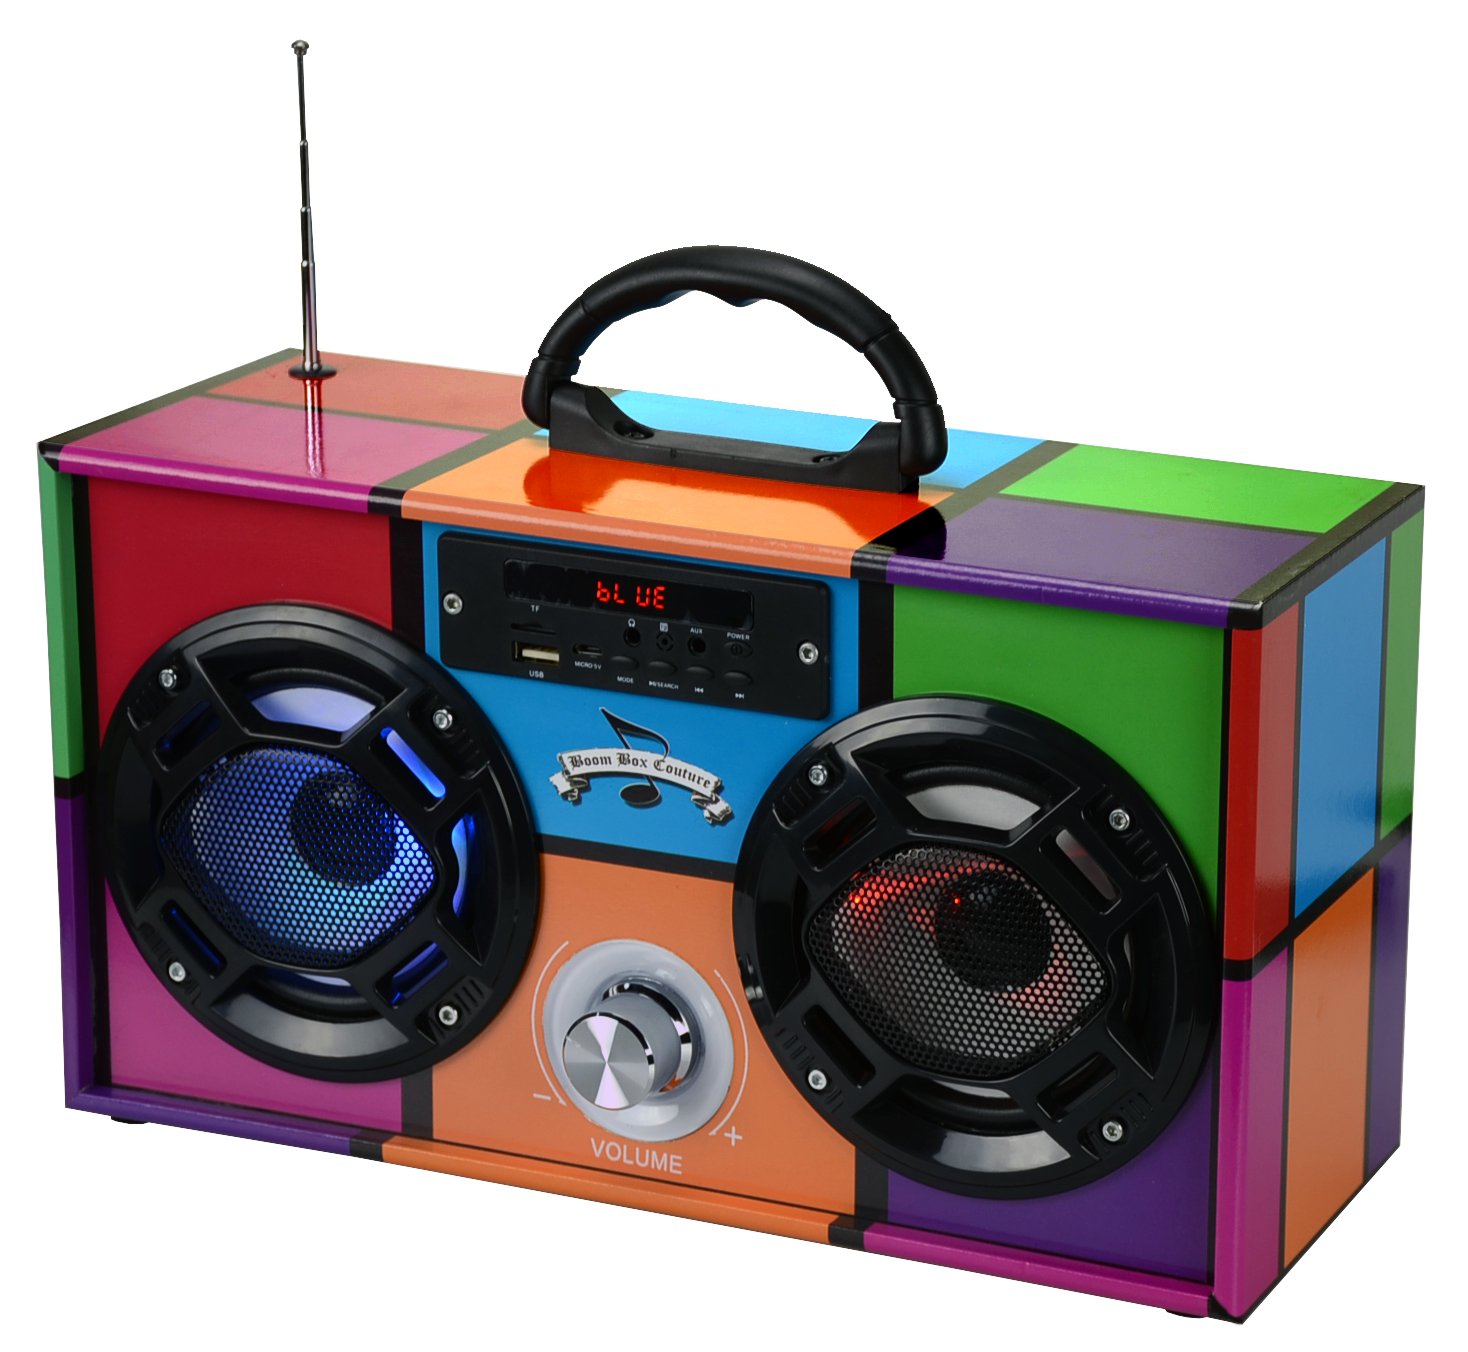 Trend Tech Brands - Retro 90's draadloze boombox met FM-radio